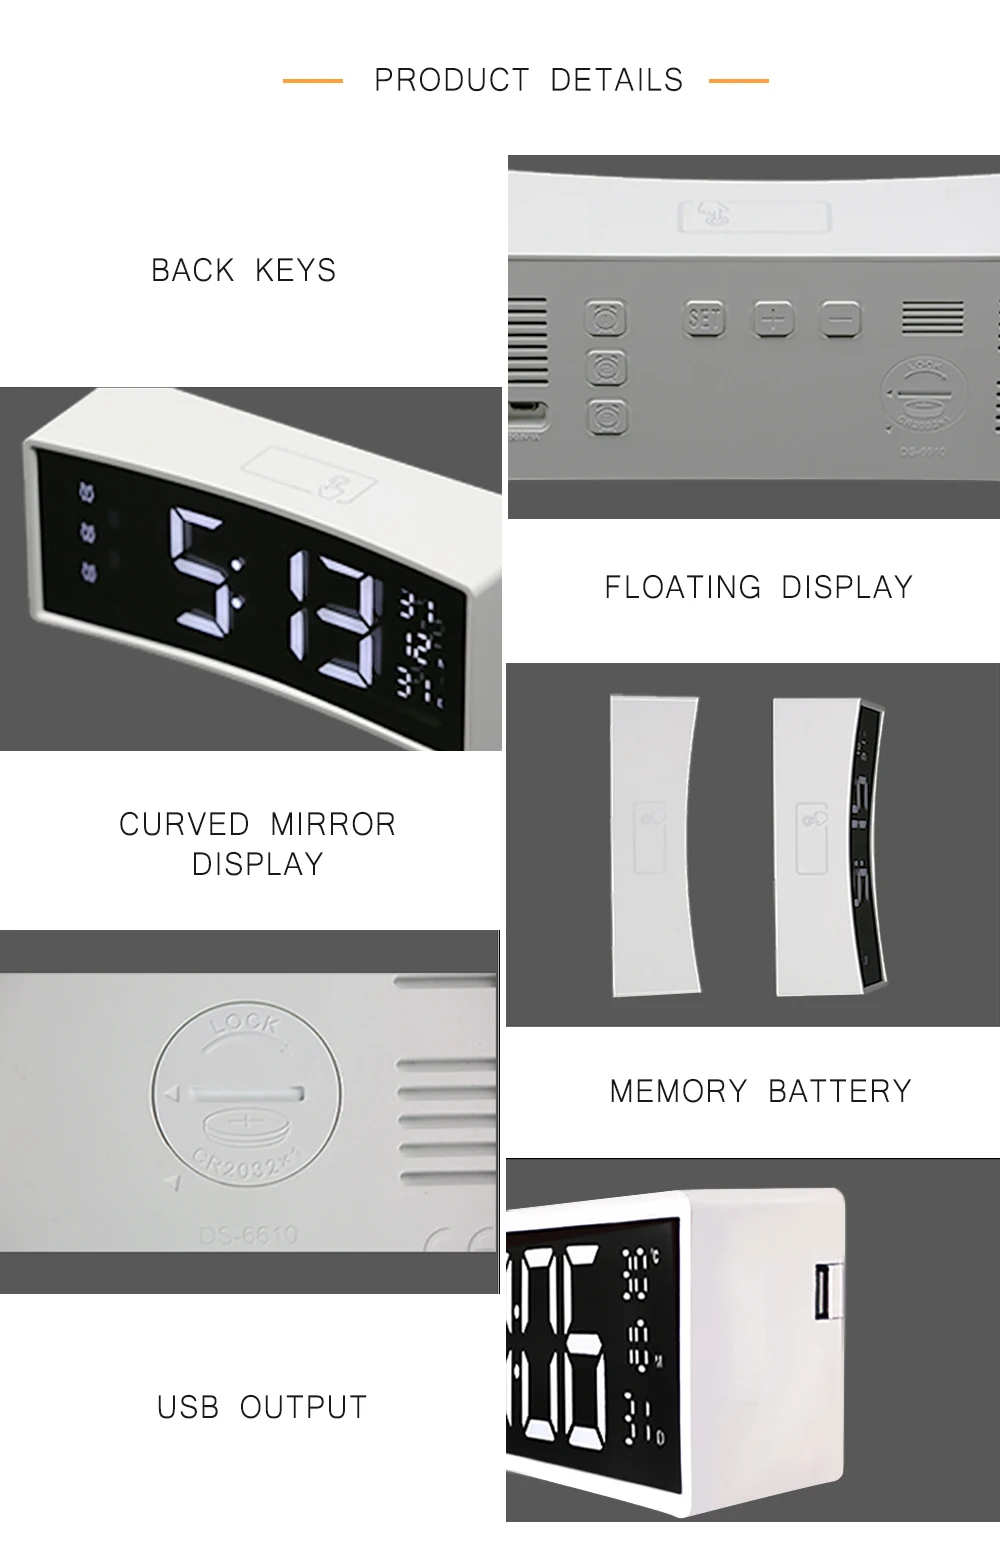 3D будильник изогнутая поверхность экран плавающий светодиодный дисплей умный будильник электронные часы цифровой светодиодный Будильник функция повтора